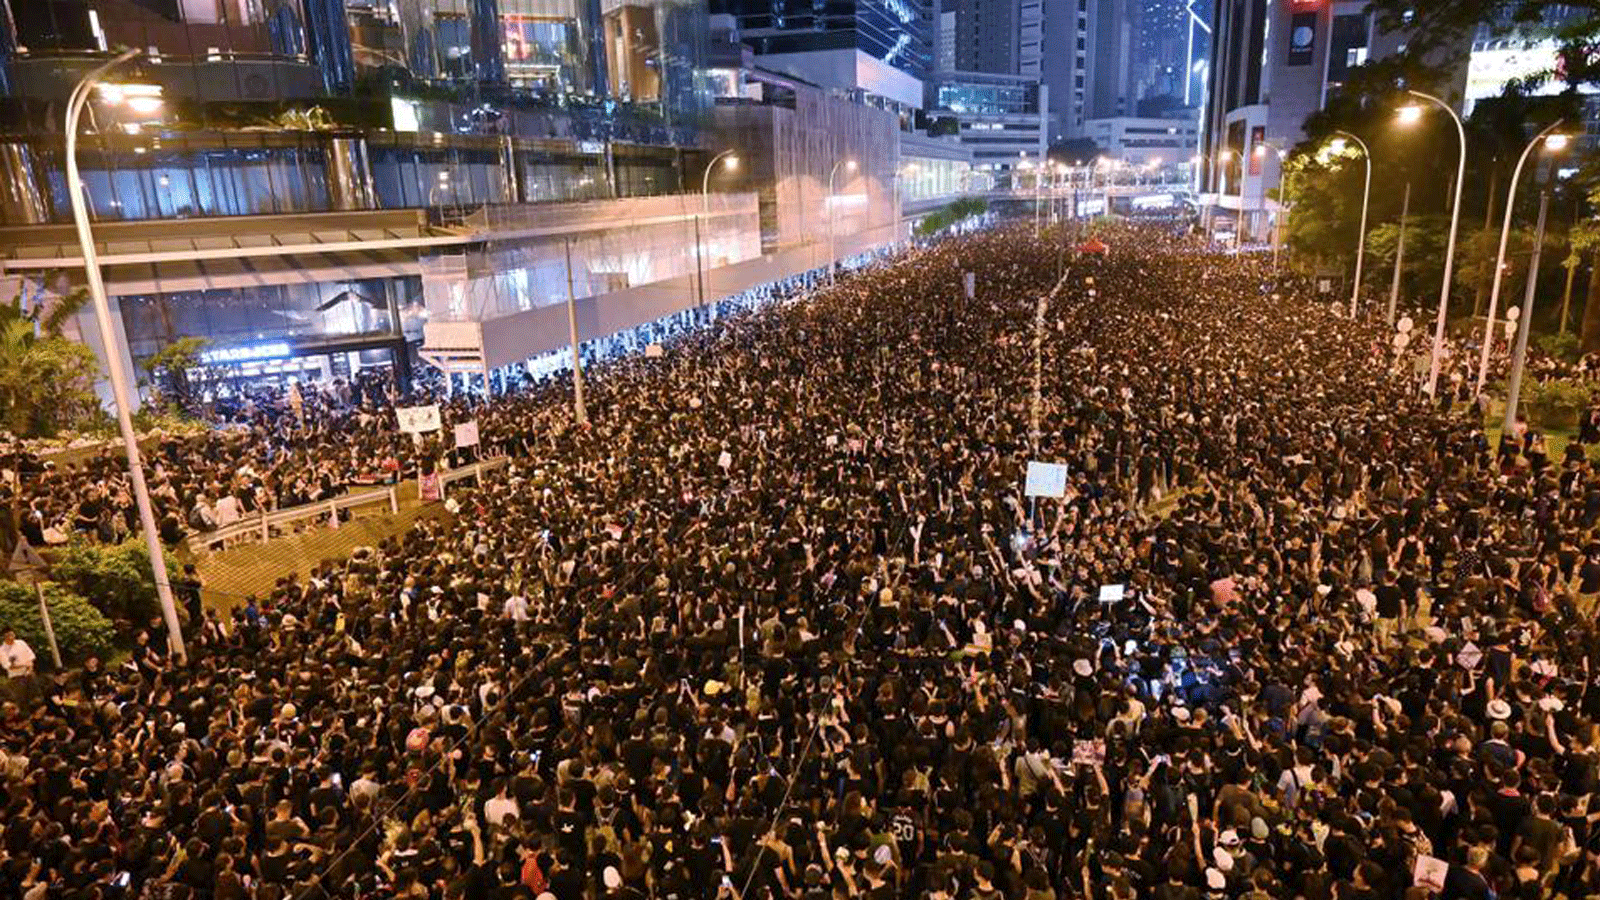 مئات الآلاف من المتظاهرين في شوارع هونغ كونغ في 16 يونيو / حزيران 2019 رفضاً للقوانين المفروضة من الصين